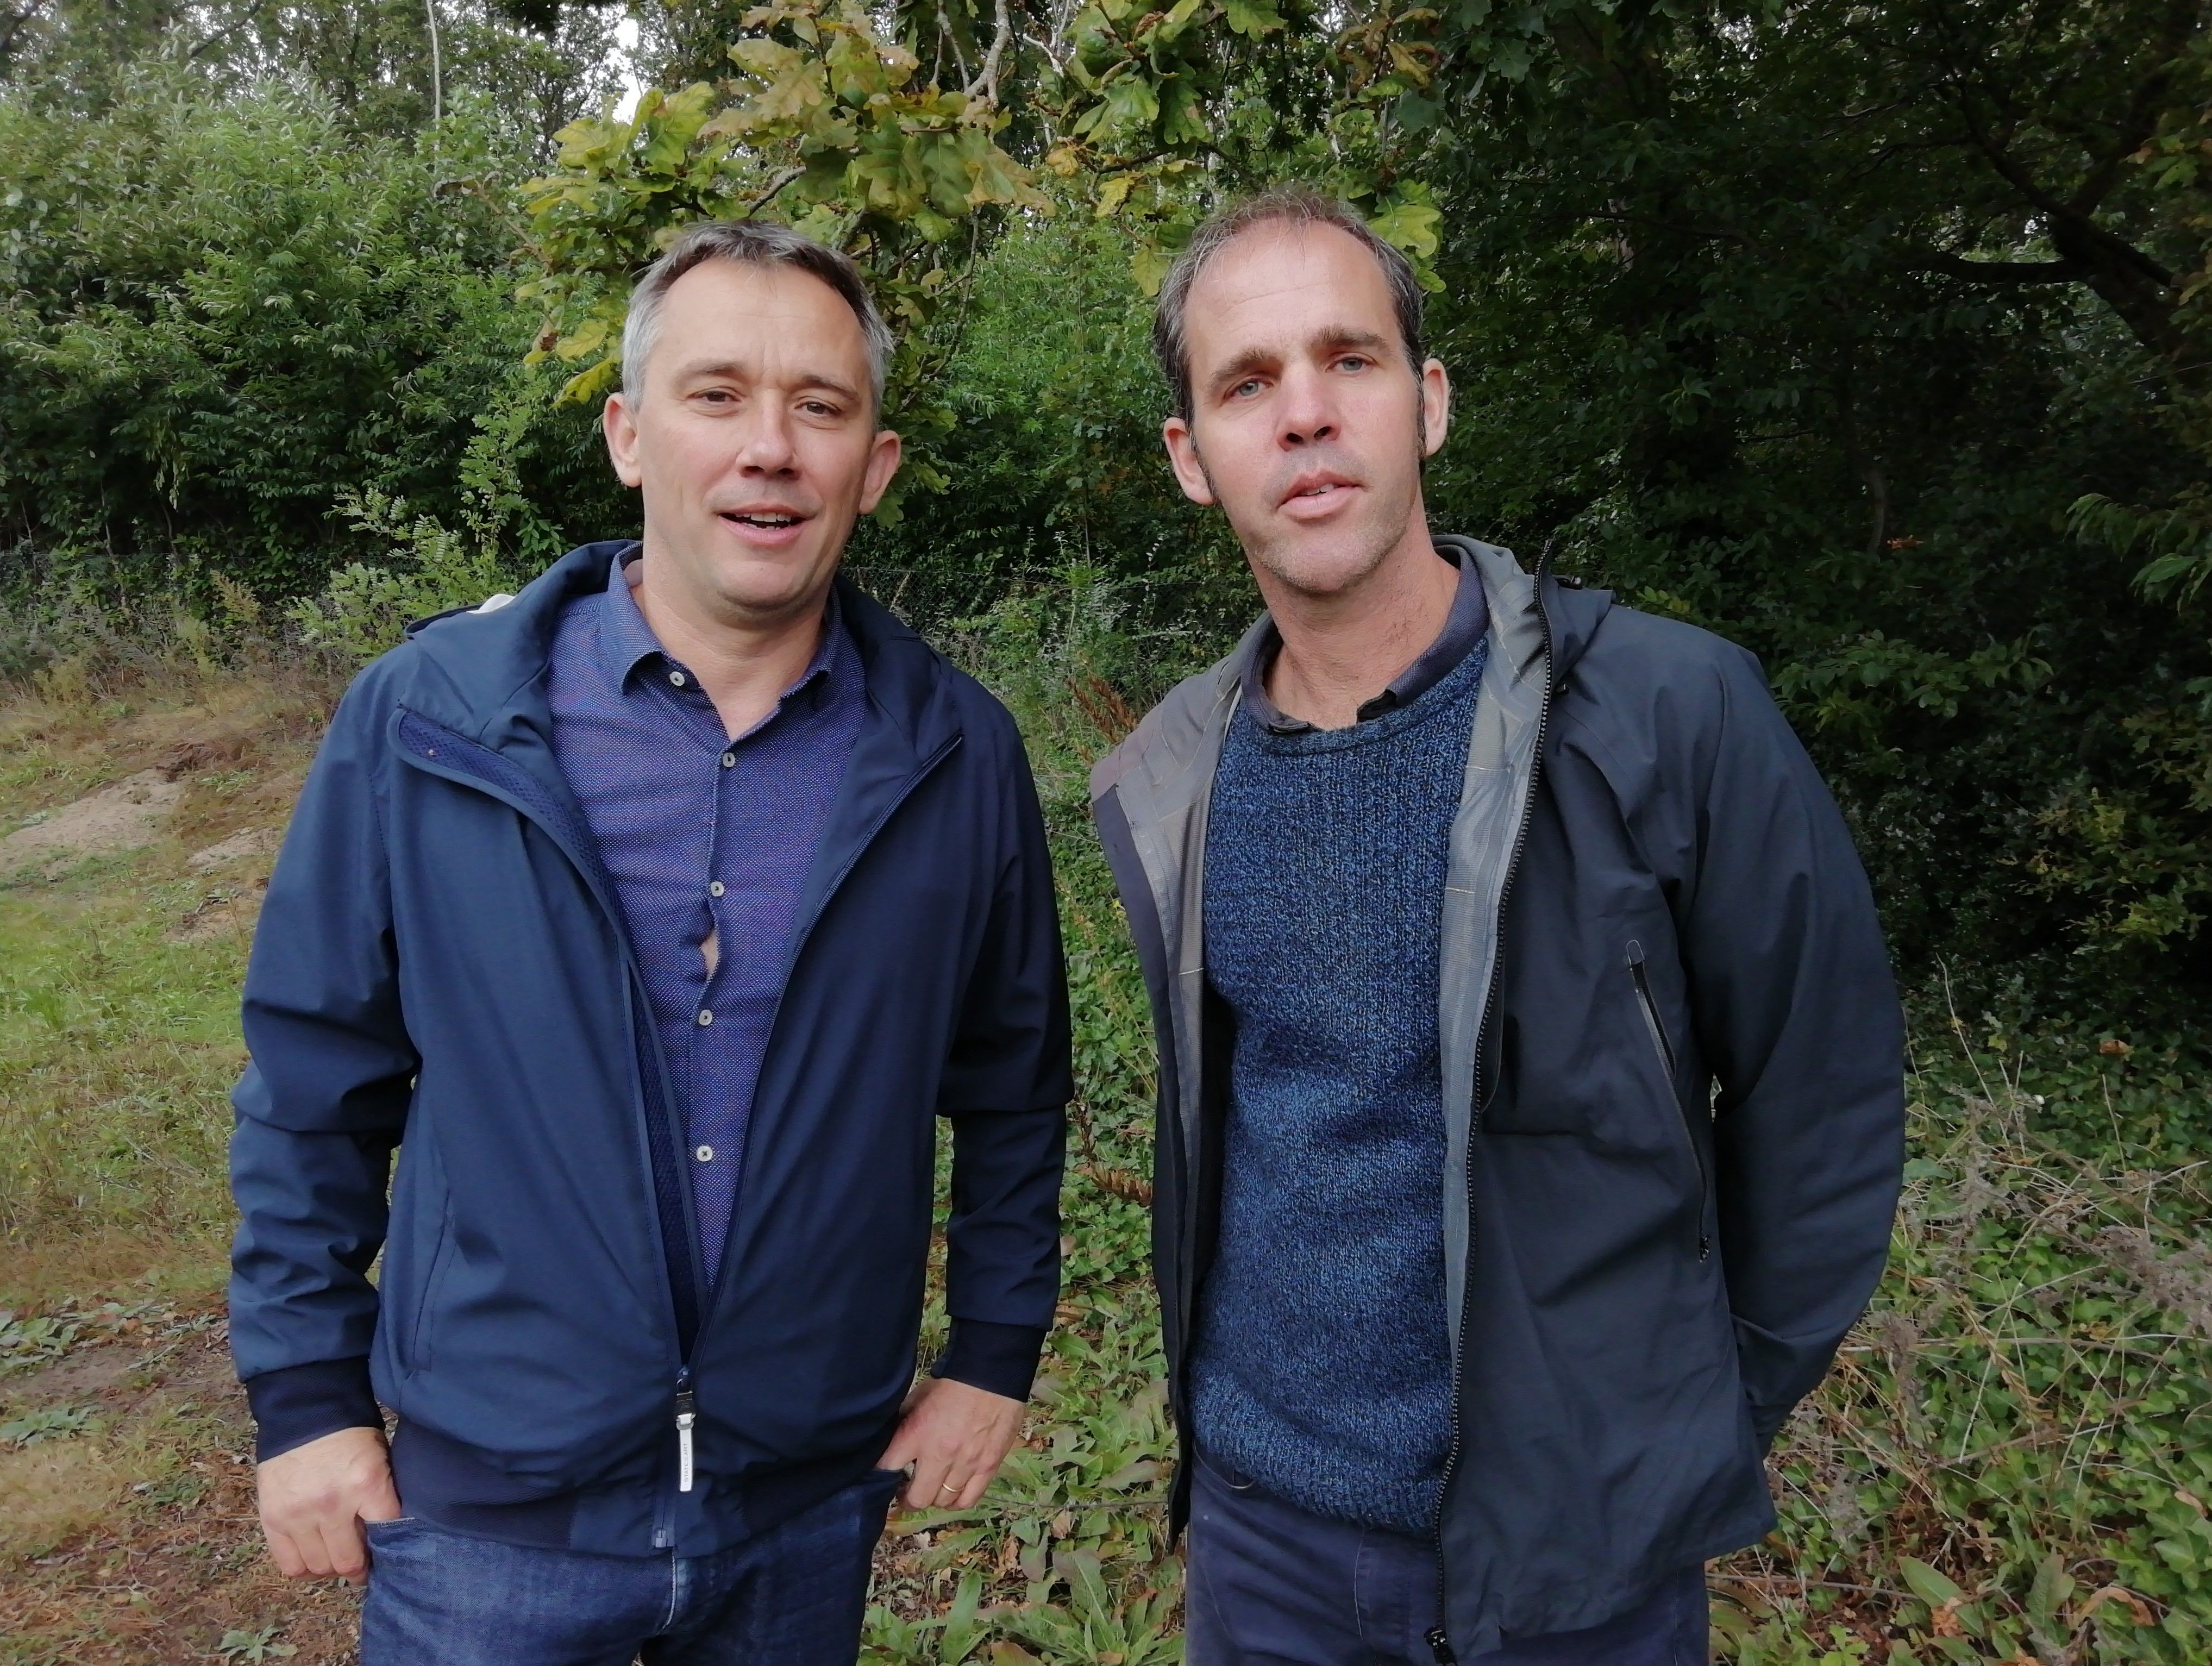 VLM'ers Toon Van Coillie en Klaas De Smet: "We zijn blij dat de Gentenaars de Vinderhoutse Bossen omarmen. Het is dan ook de groenpool die het dichtst bij de stad ligt."